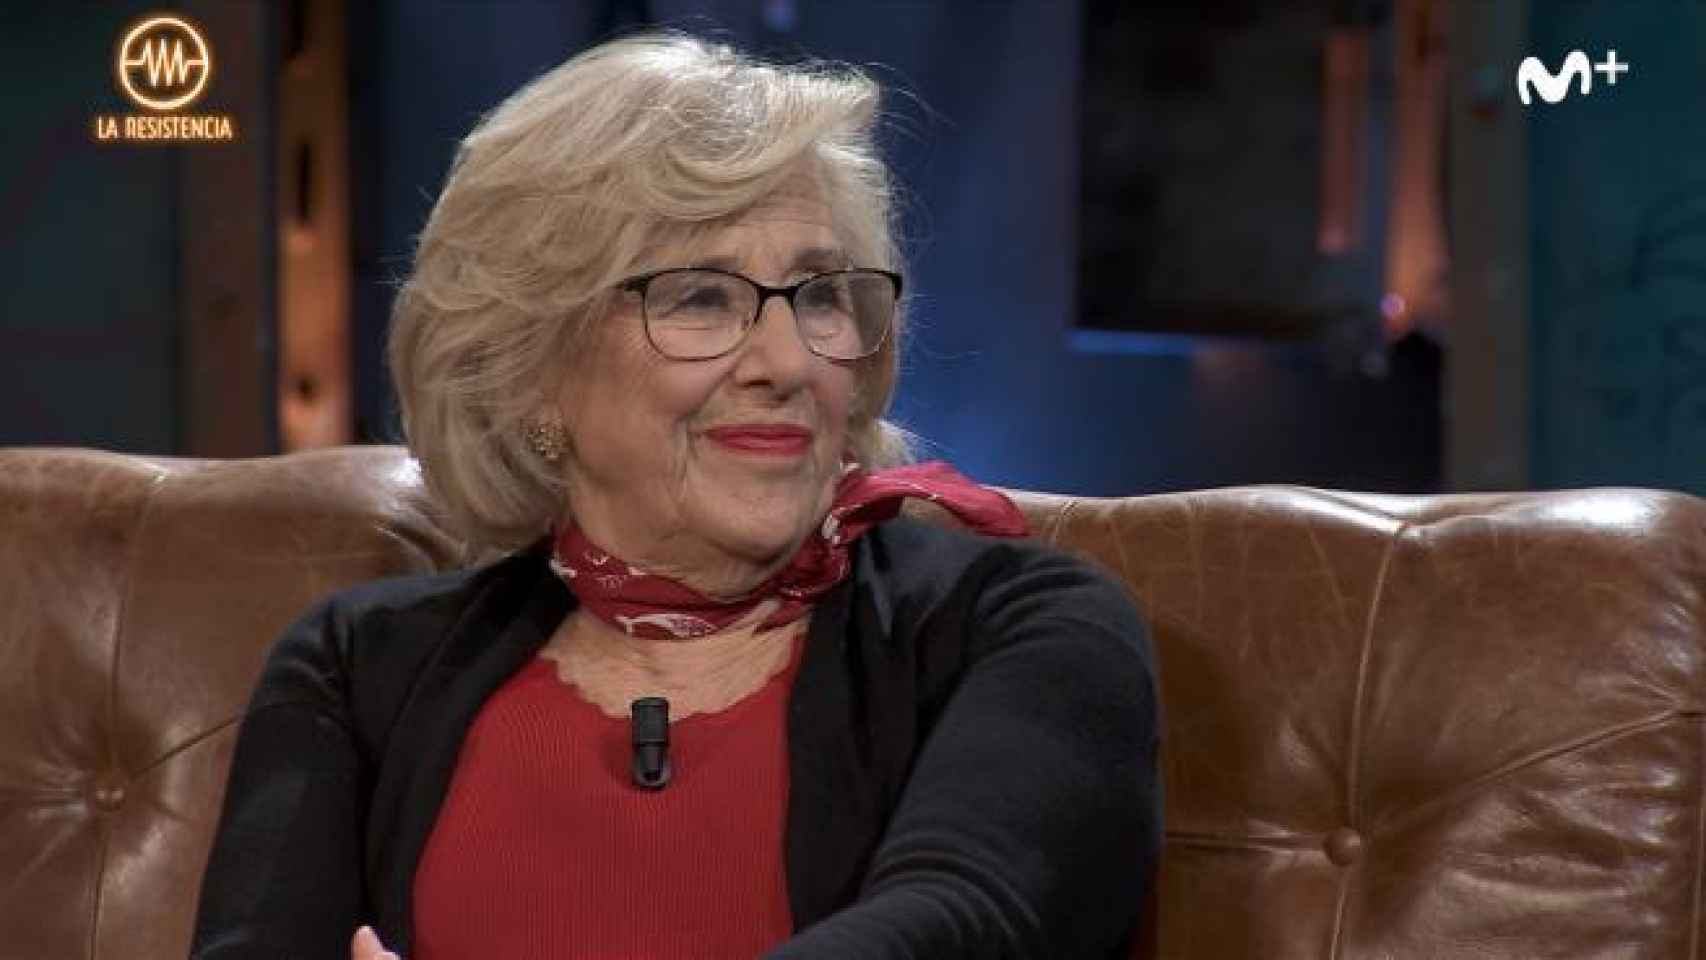 Manuela Carmena contestó a la pregunta sobre el sexo en 'La Resistencia'.